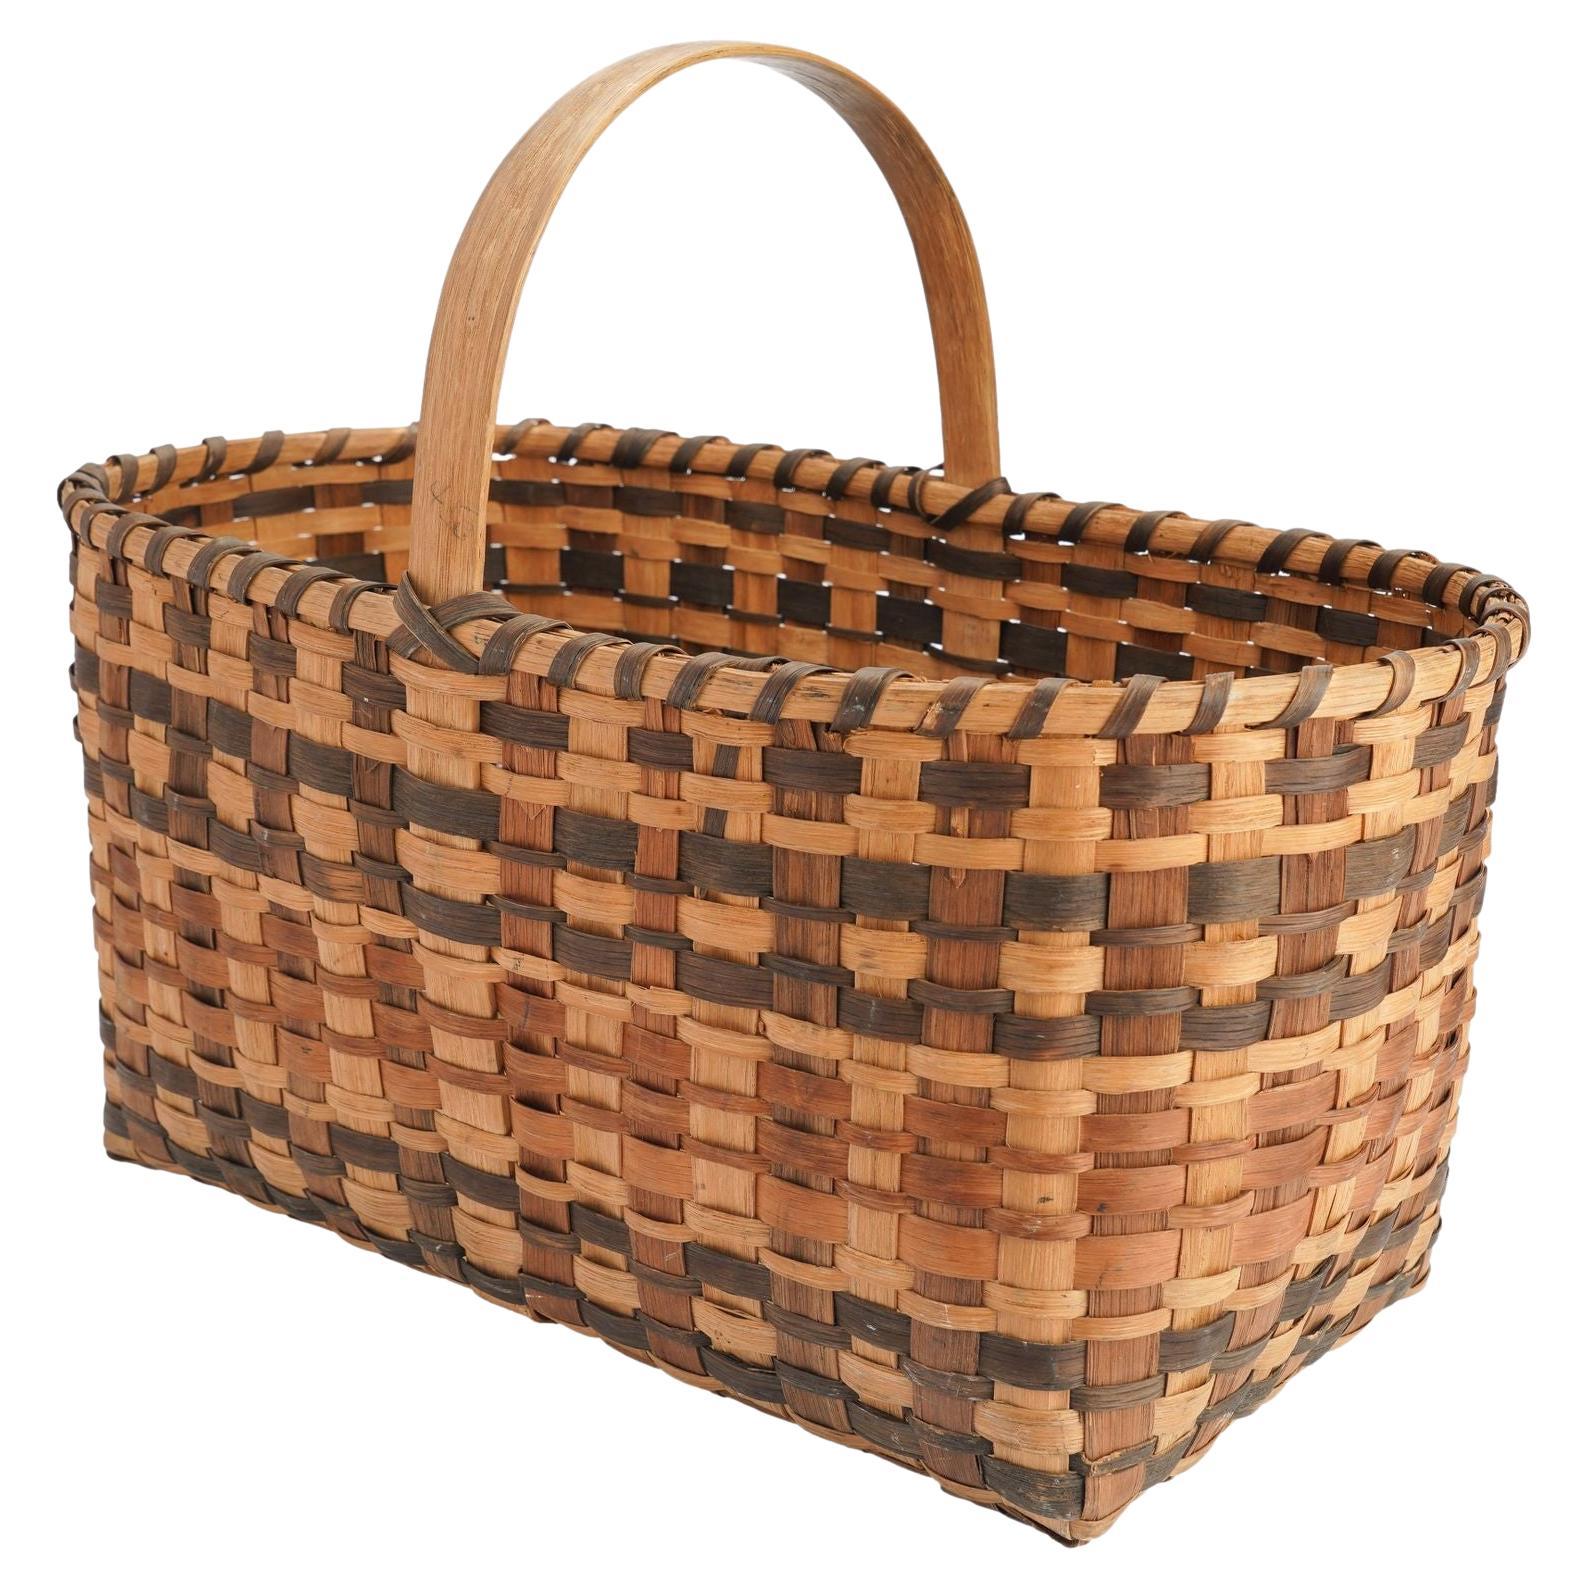 Oklahoma Cherokee woven split oak rectangular basket with handle, 1900’s